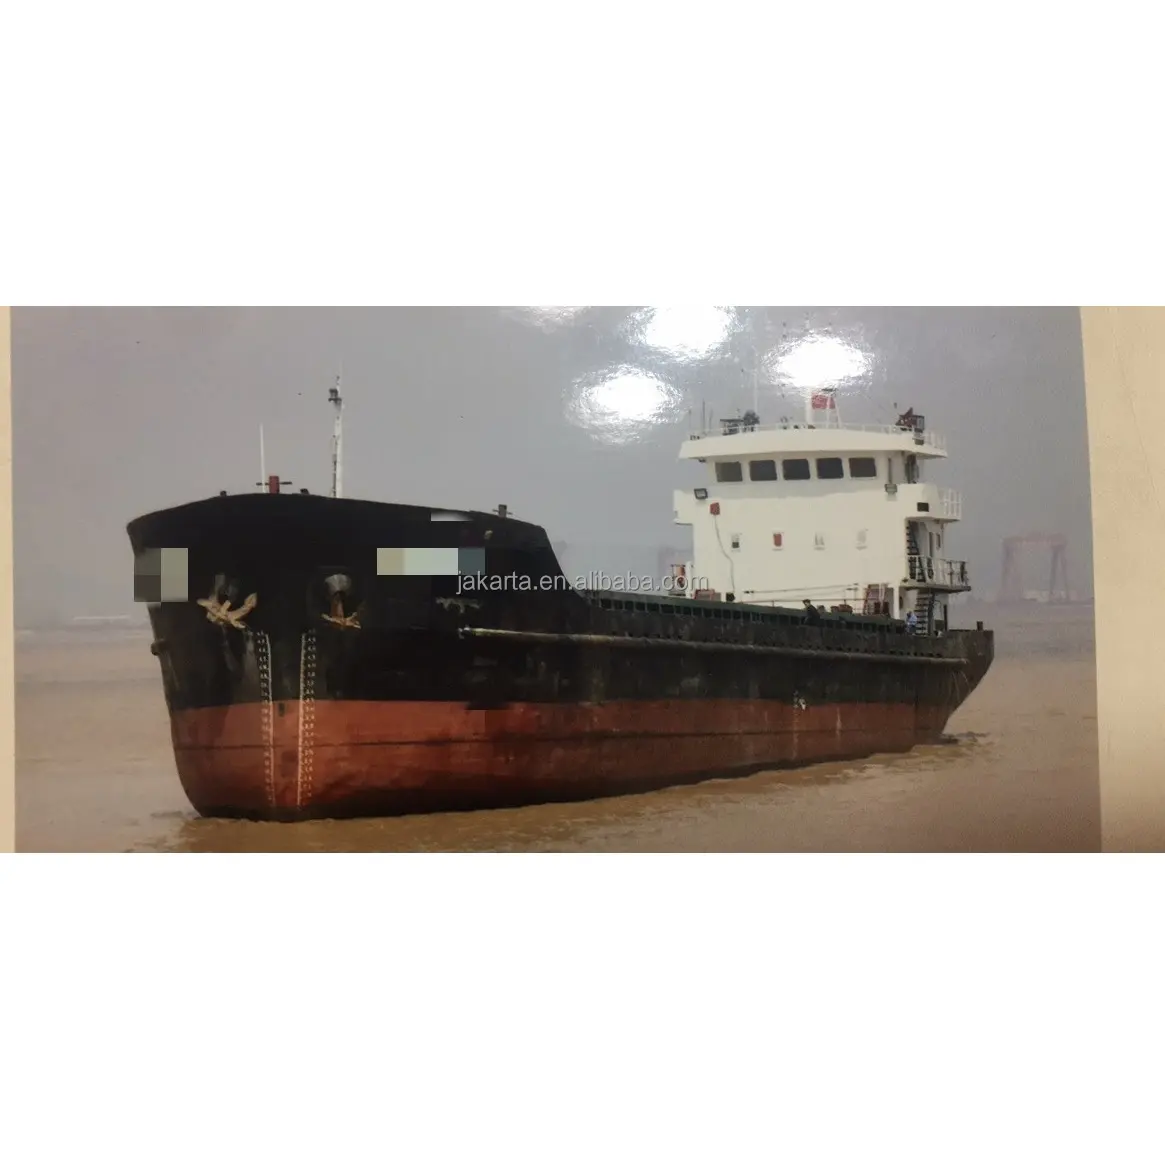 Nave portacontainer 915DWT in vendita a buon mercato, nave usata con alta qualità